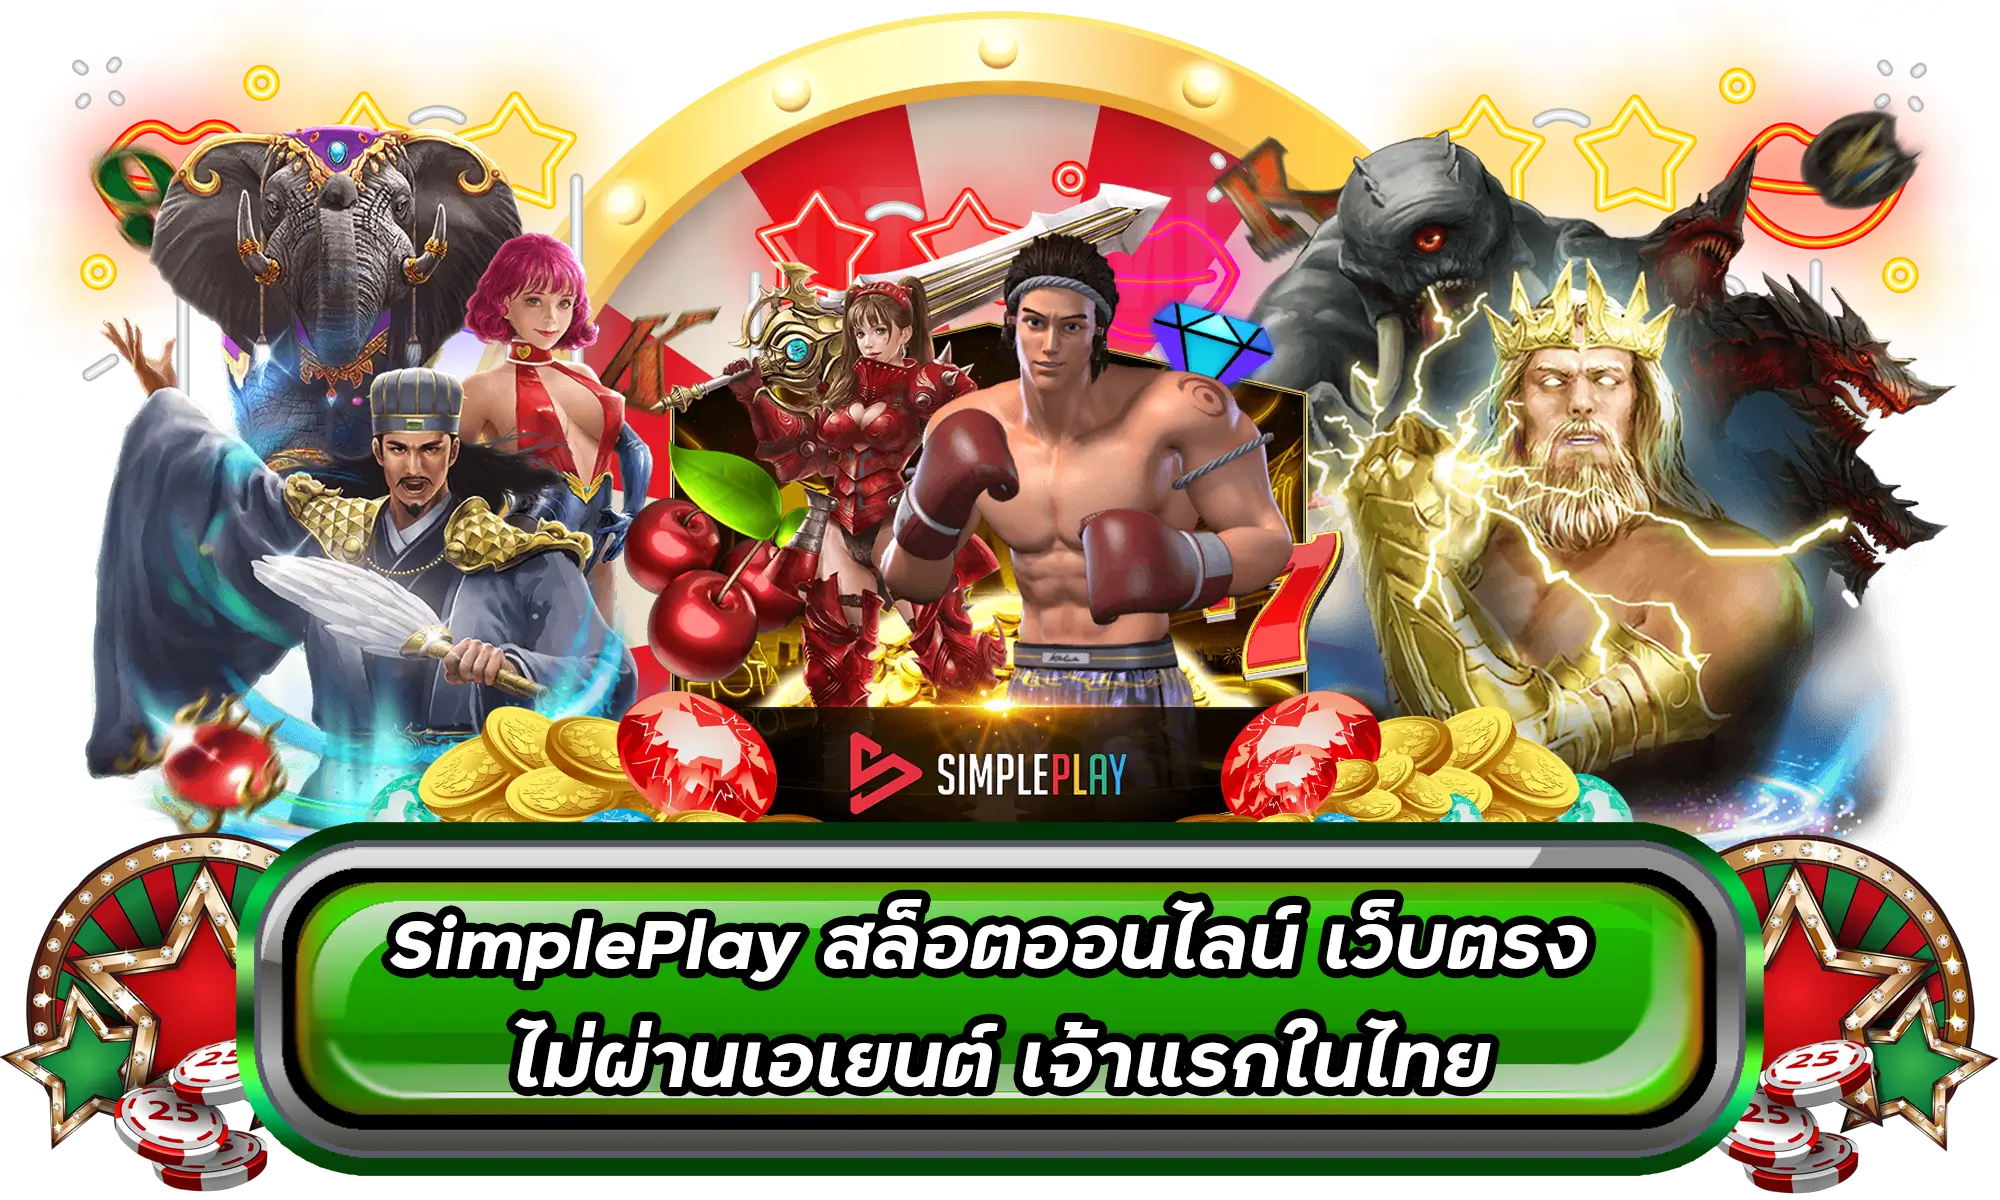 SimplePlay สล็อตออนไลน์ เว็บตรง ไม่ผ่านเอเยนต์ เจ้าแรกในไทย